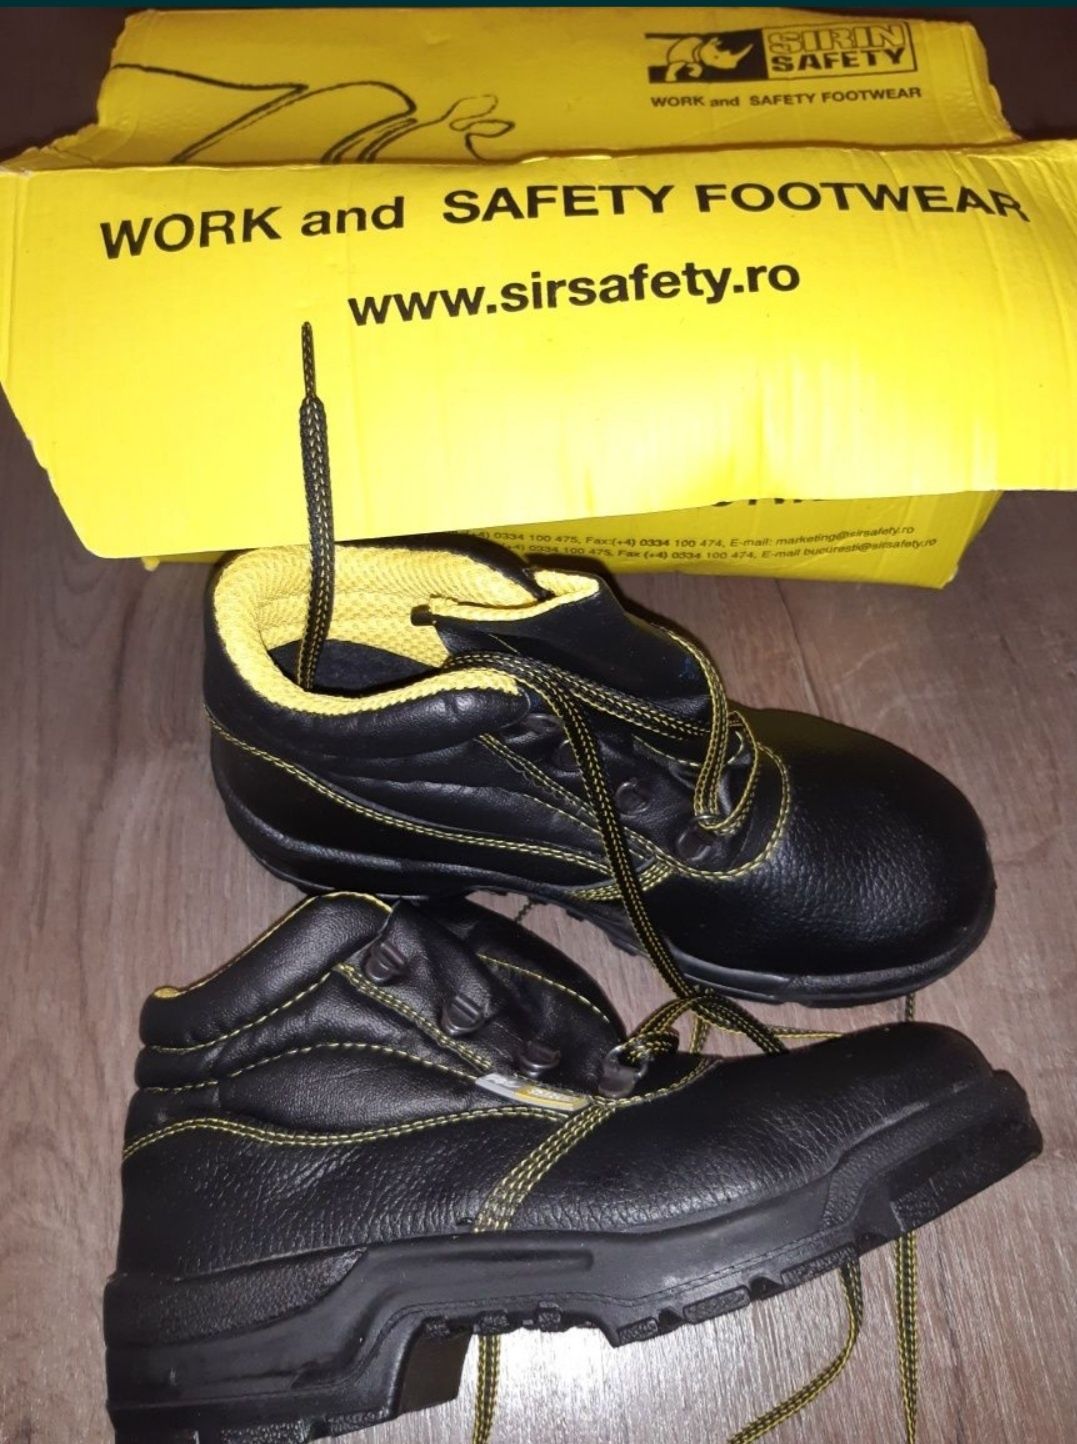 Pantofi protectie Exena mar 35 Safety